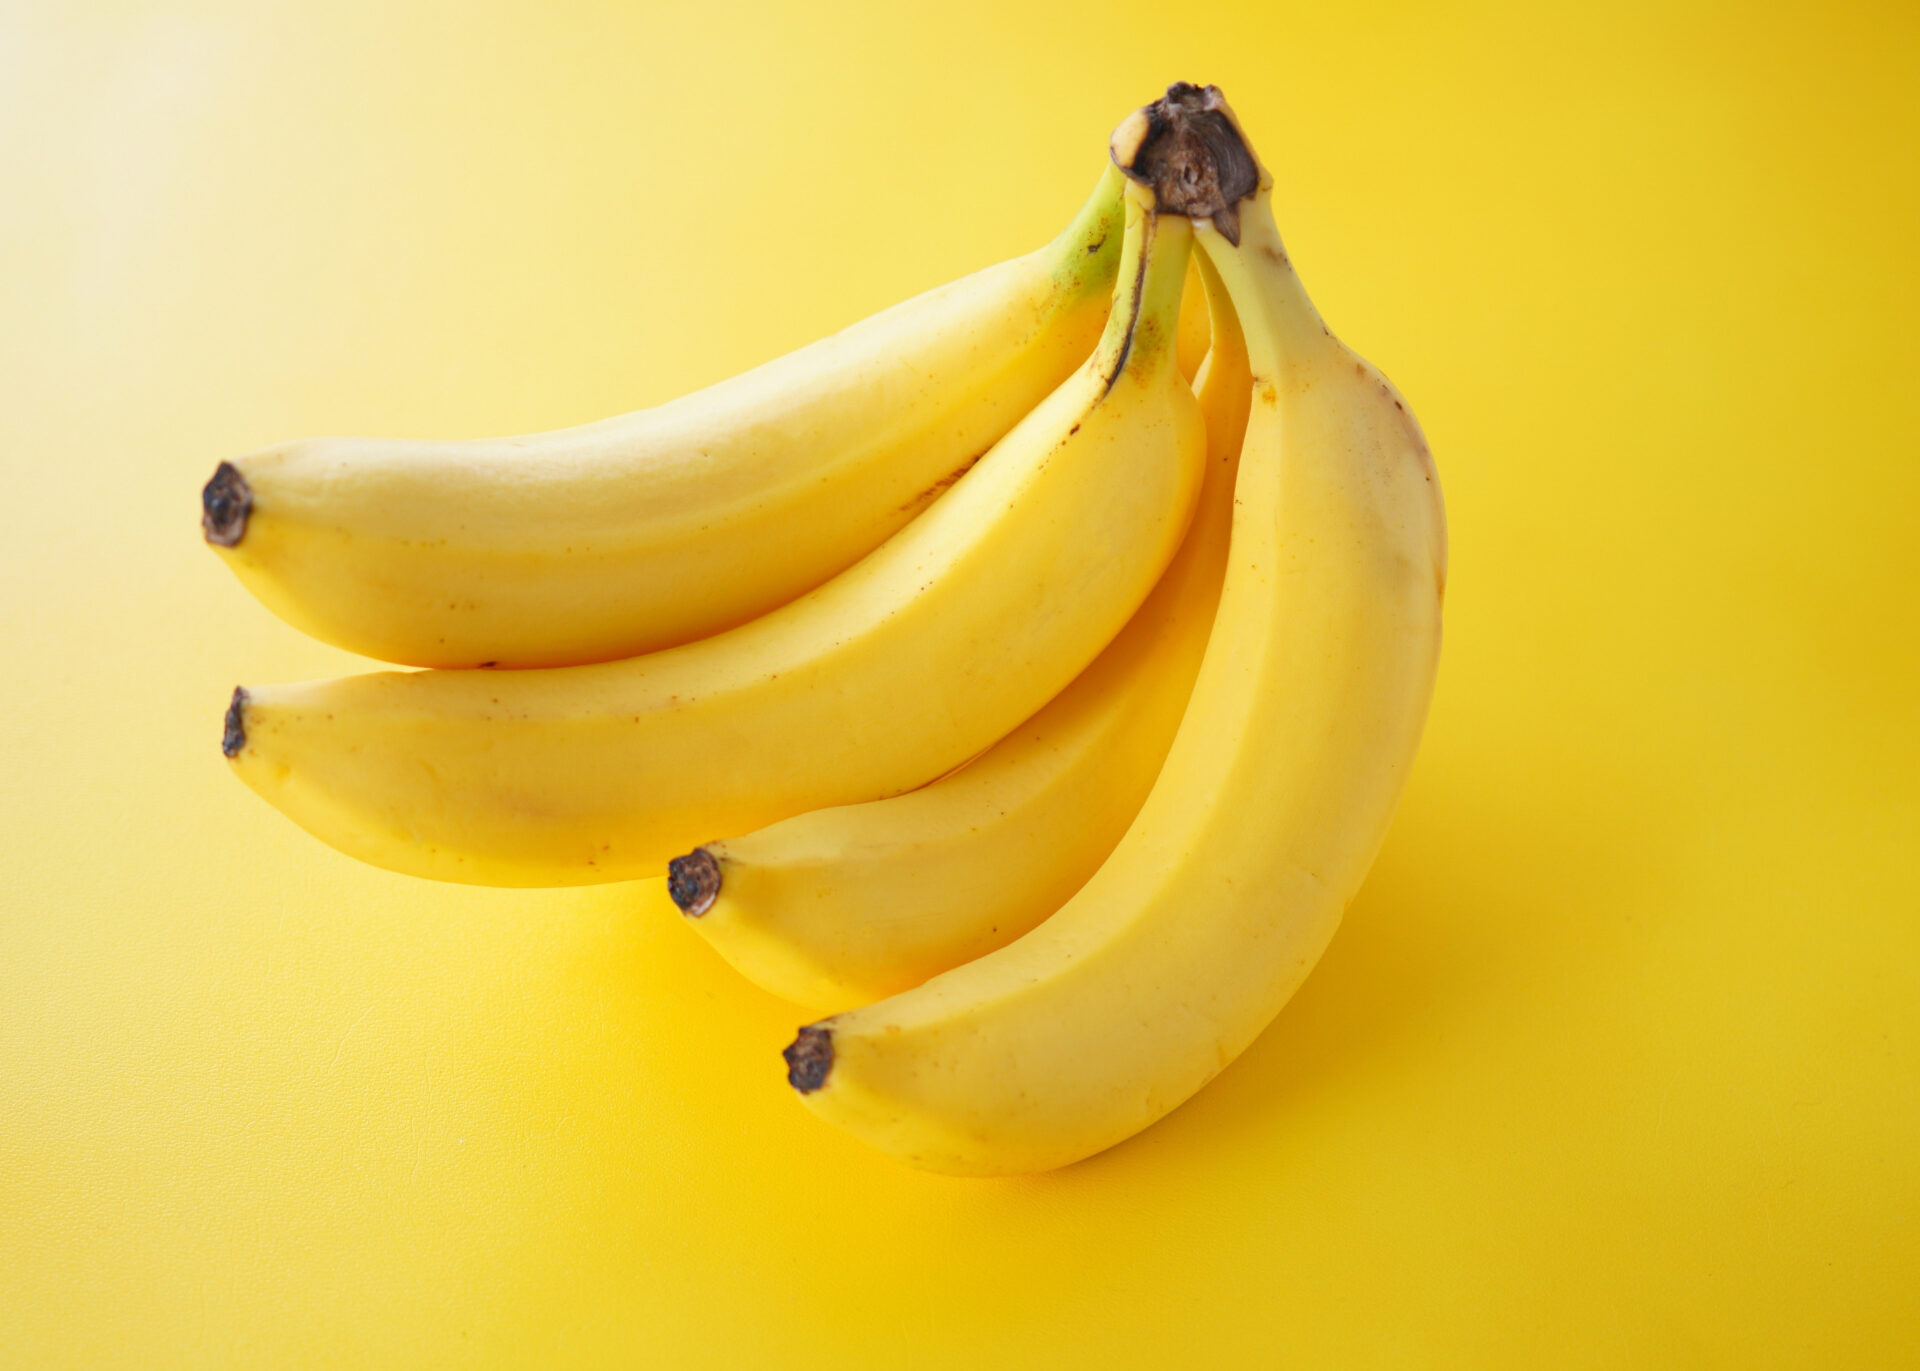 11 benefícios da banana para a saúde baseados em evidências